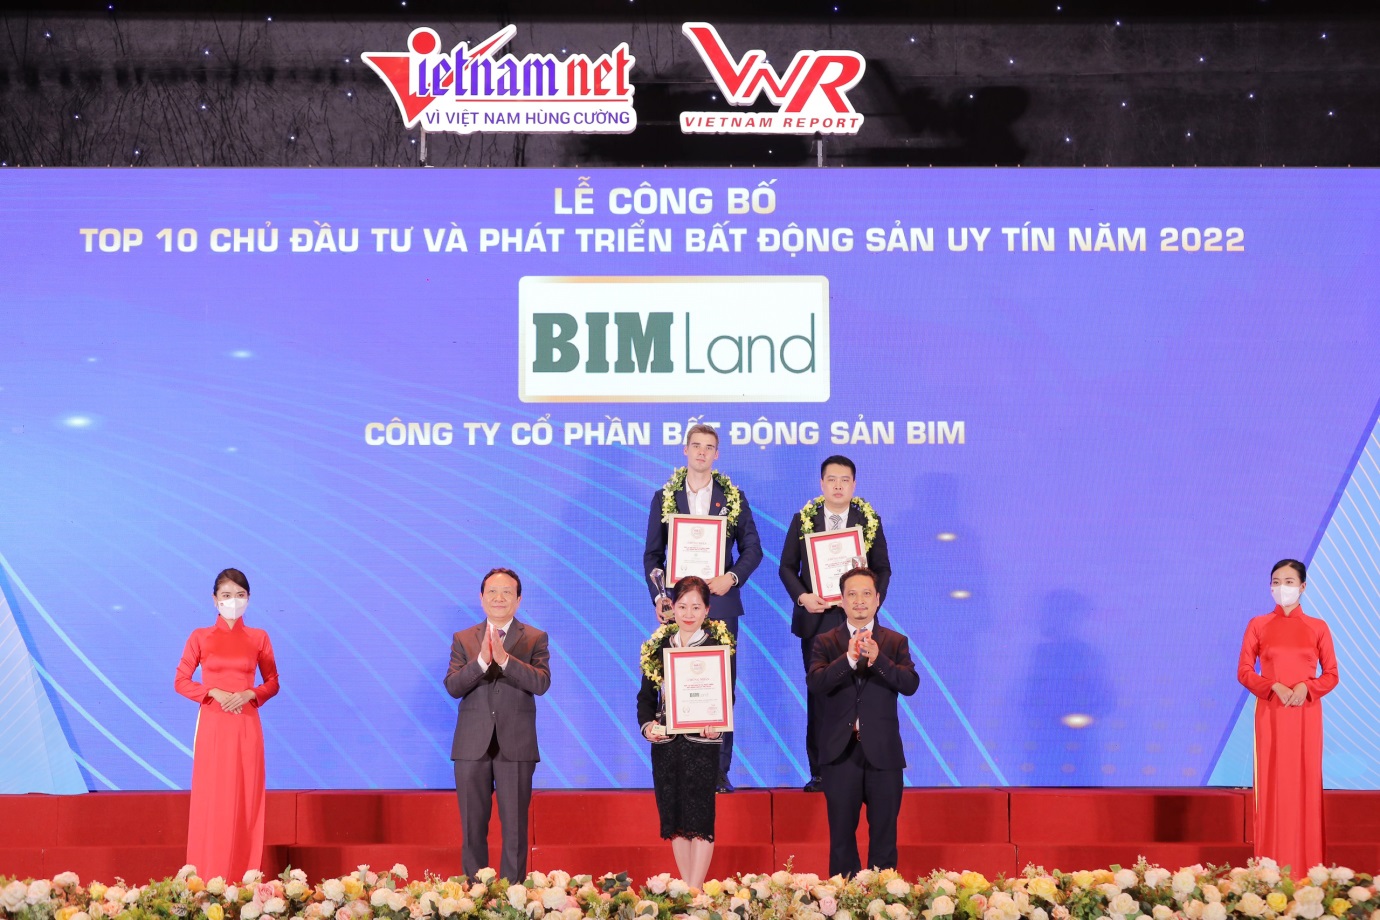 BIM Land lần thứ 4 liên tiếp đạt Top 10 chủ đầu từ bất động sản Việt Nam uy tín - Ảnh 1.